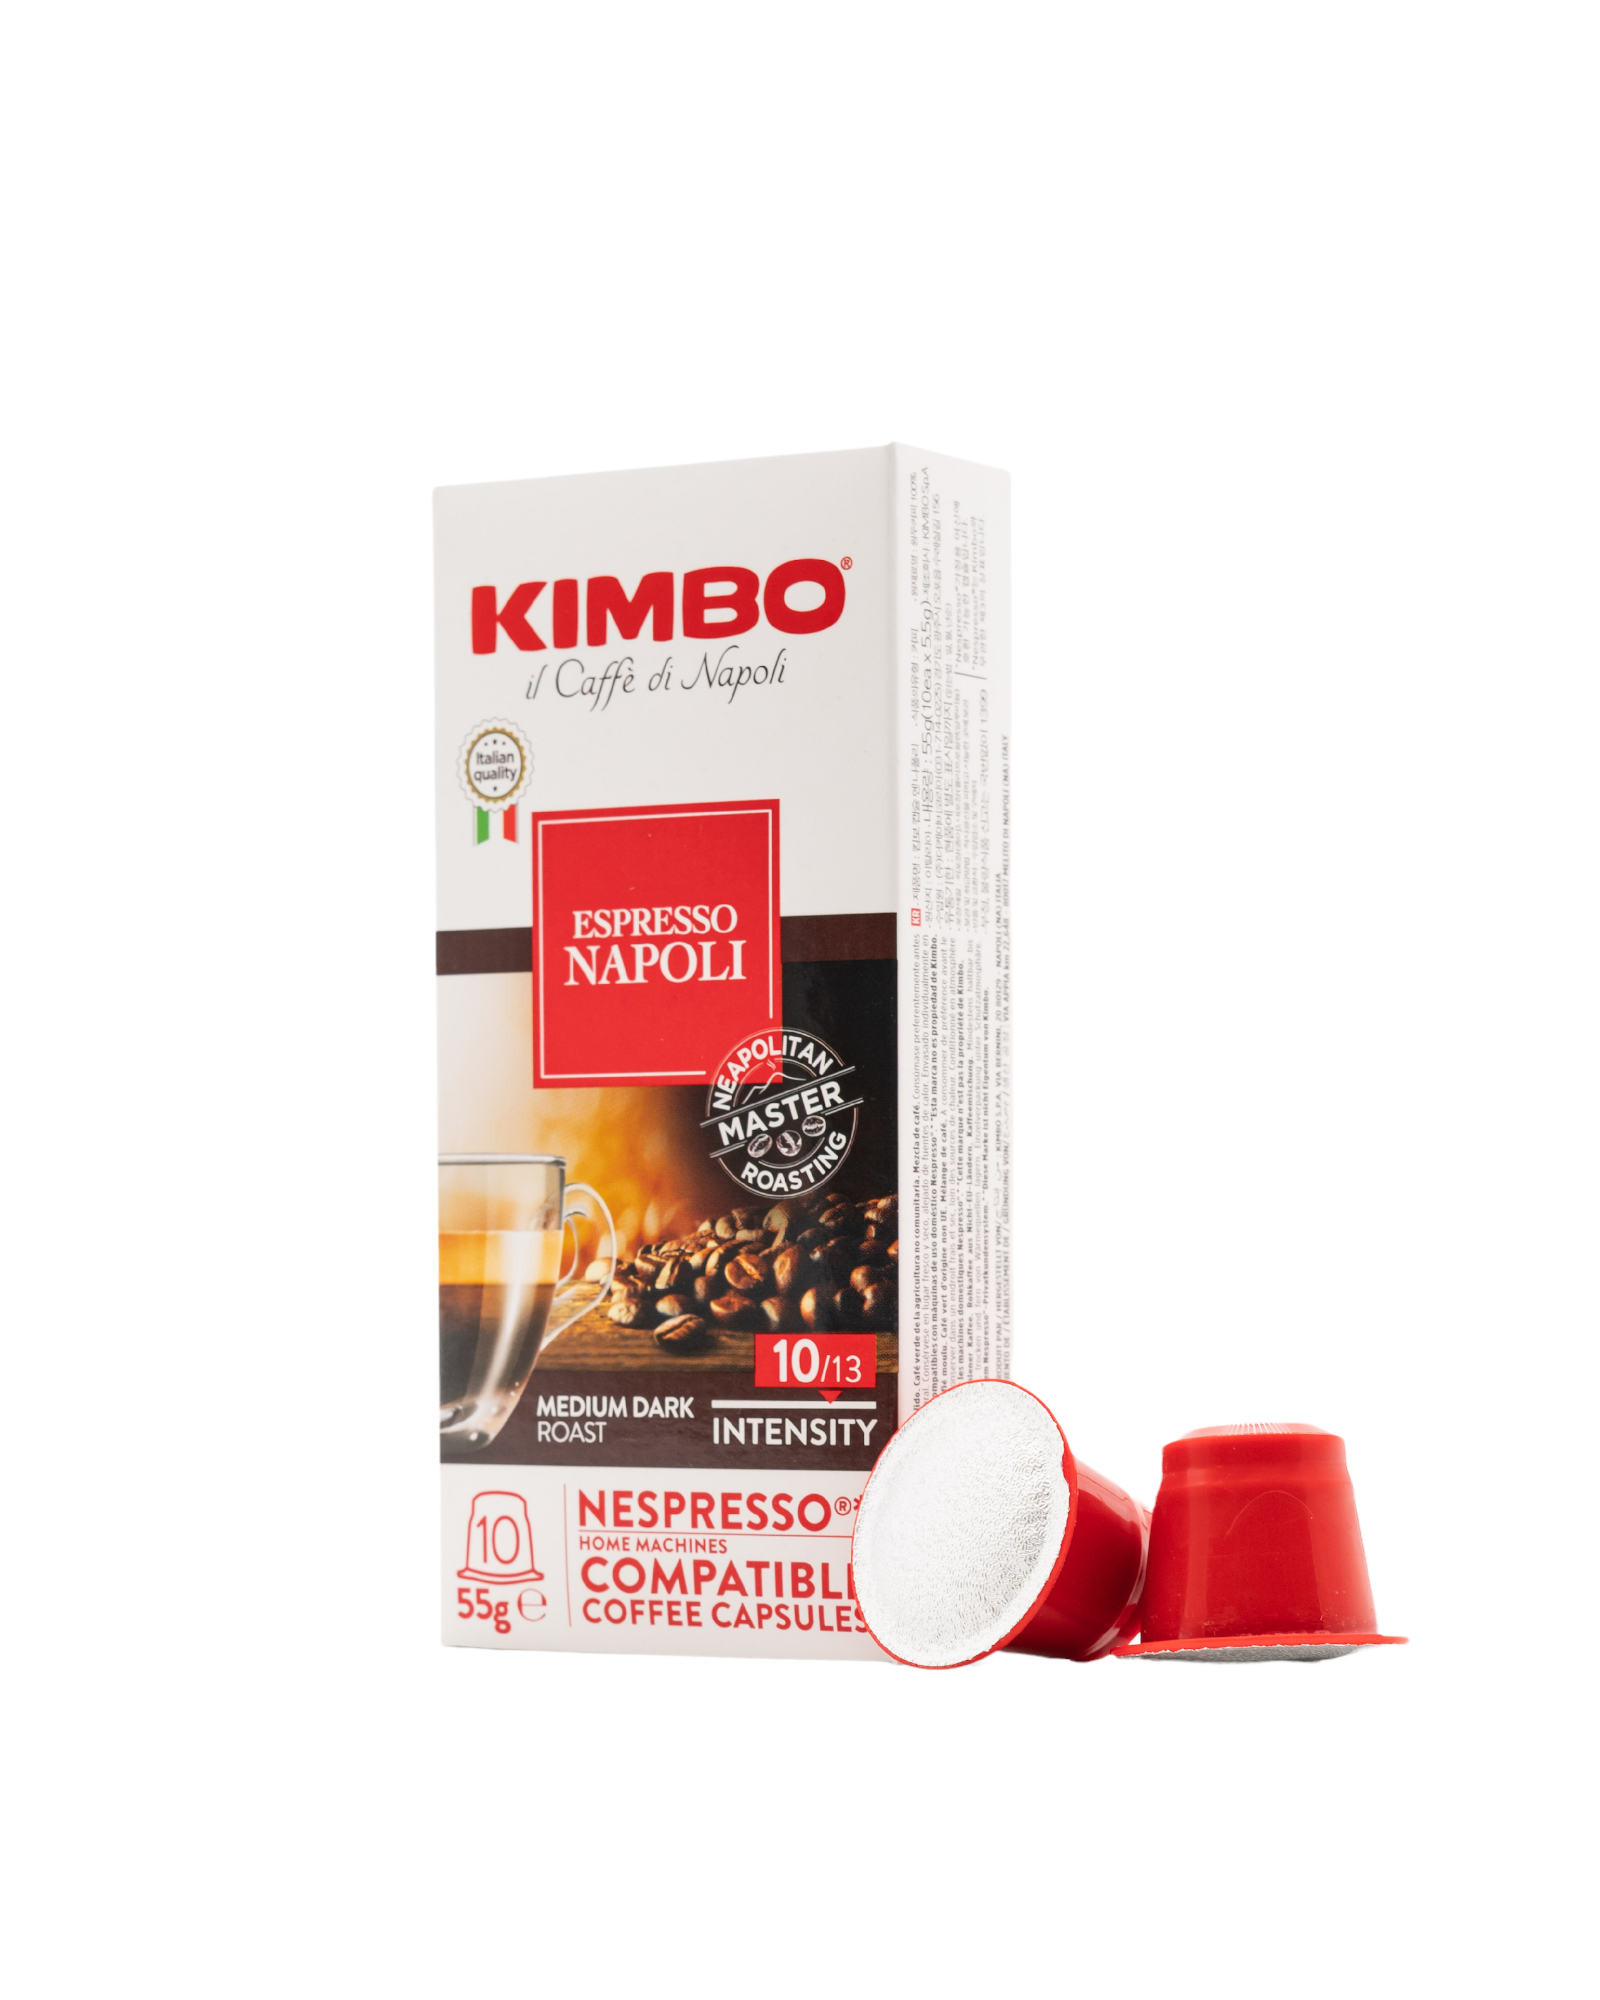 KIMBO - NC Napoli (10 capsules)